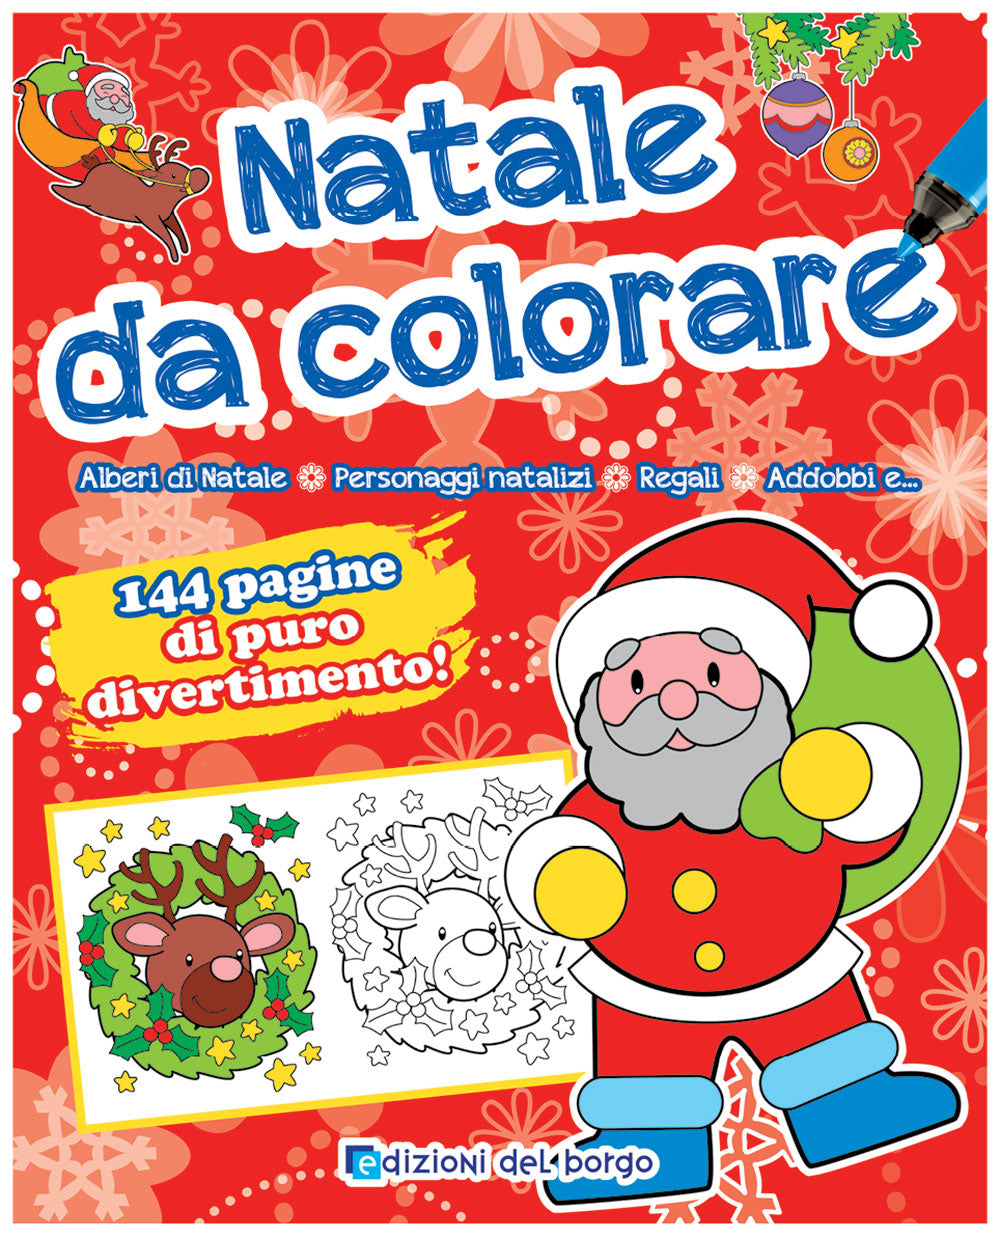 Natale da colorare::Alberi di Natale - Personaggi natalizi - Regali - Addobbi e... - 144 pagine di puro divertimento!